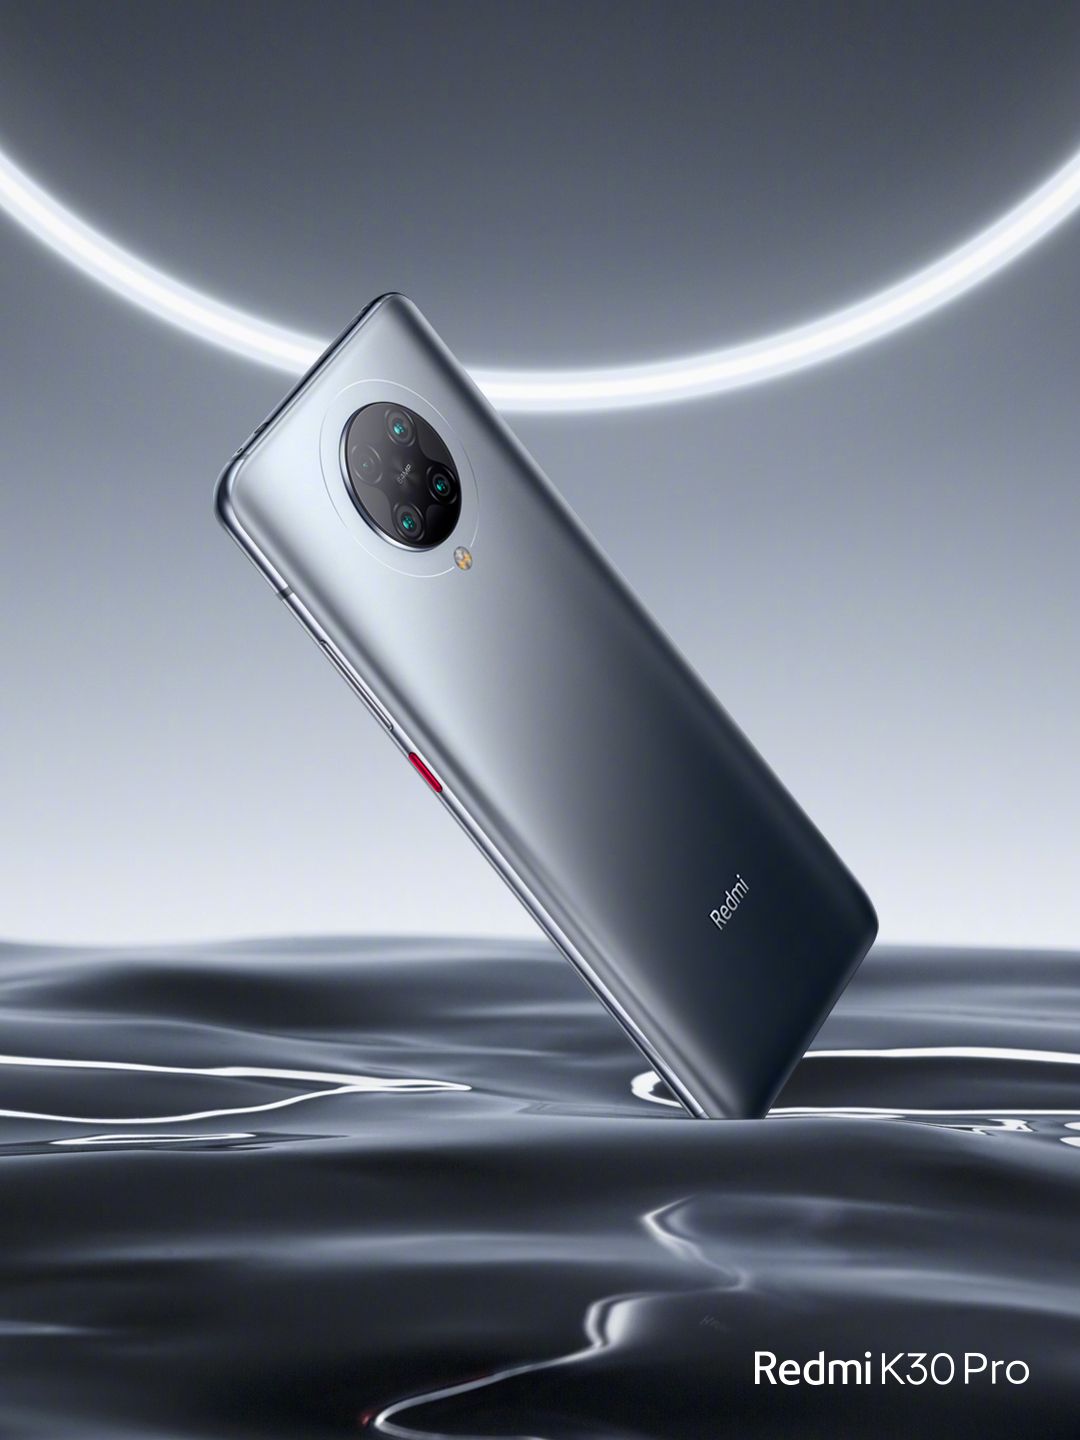 الهاتف Redmi K30 Pro سيضم كاميرتين بدقة 64 ميغابكسل، والقدرة على التصوير بدقة 8K